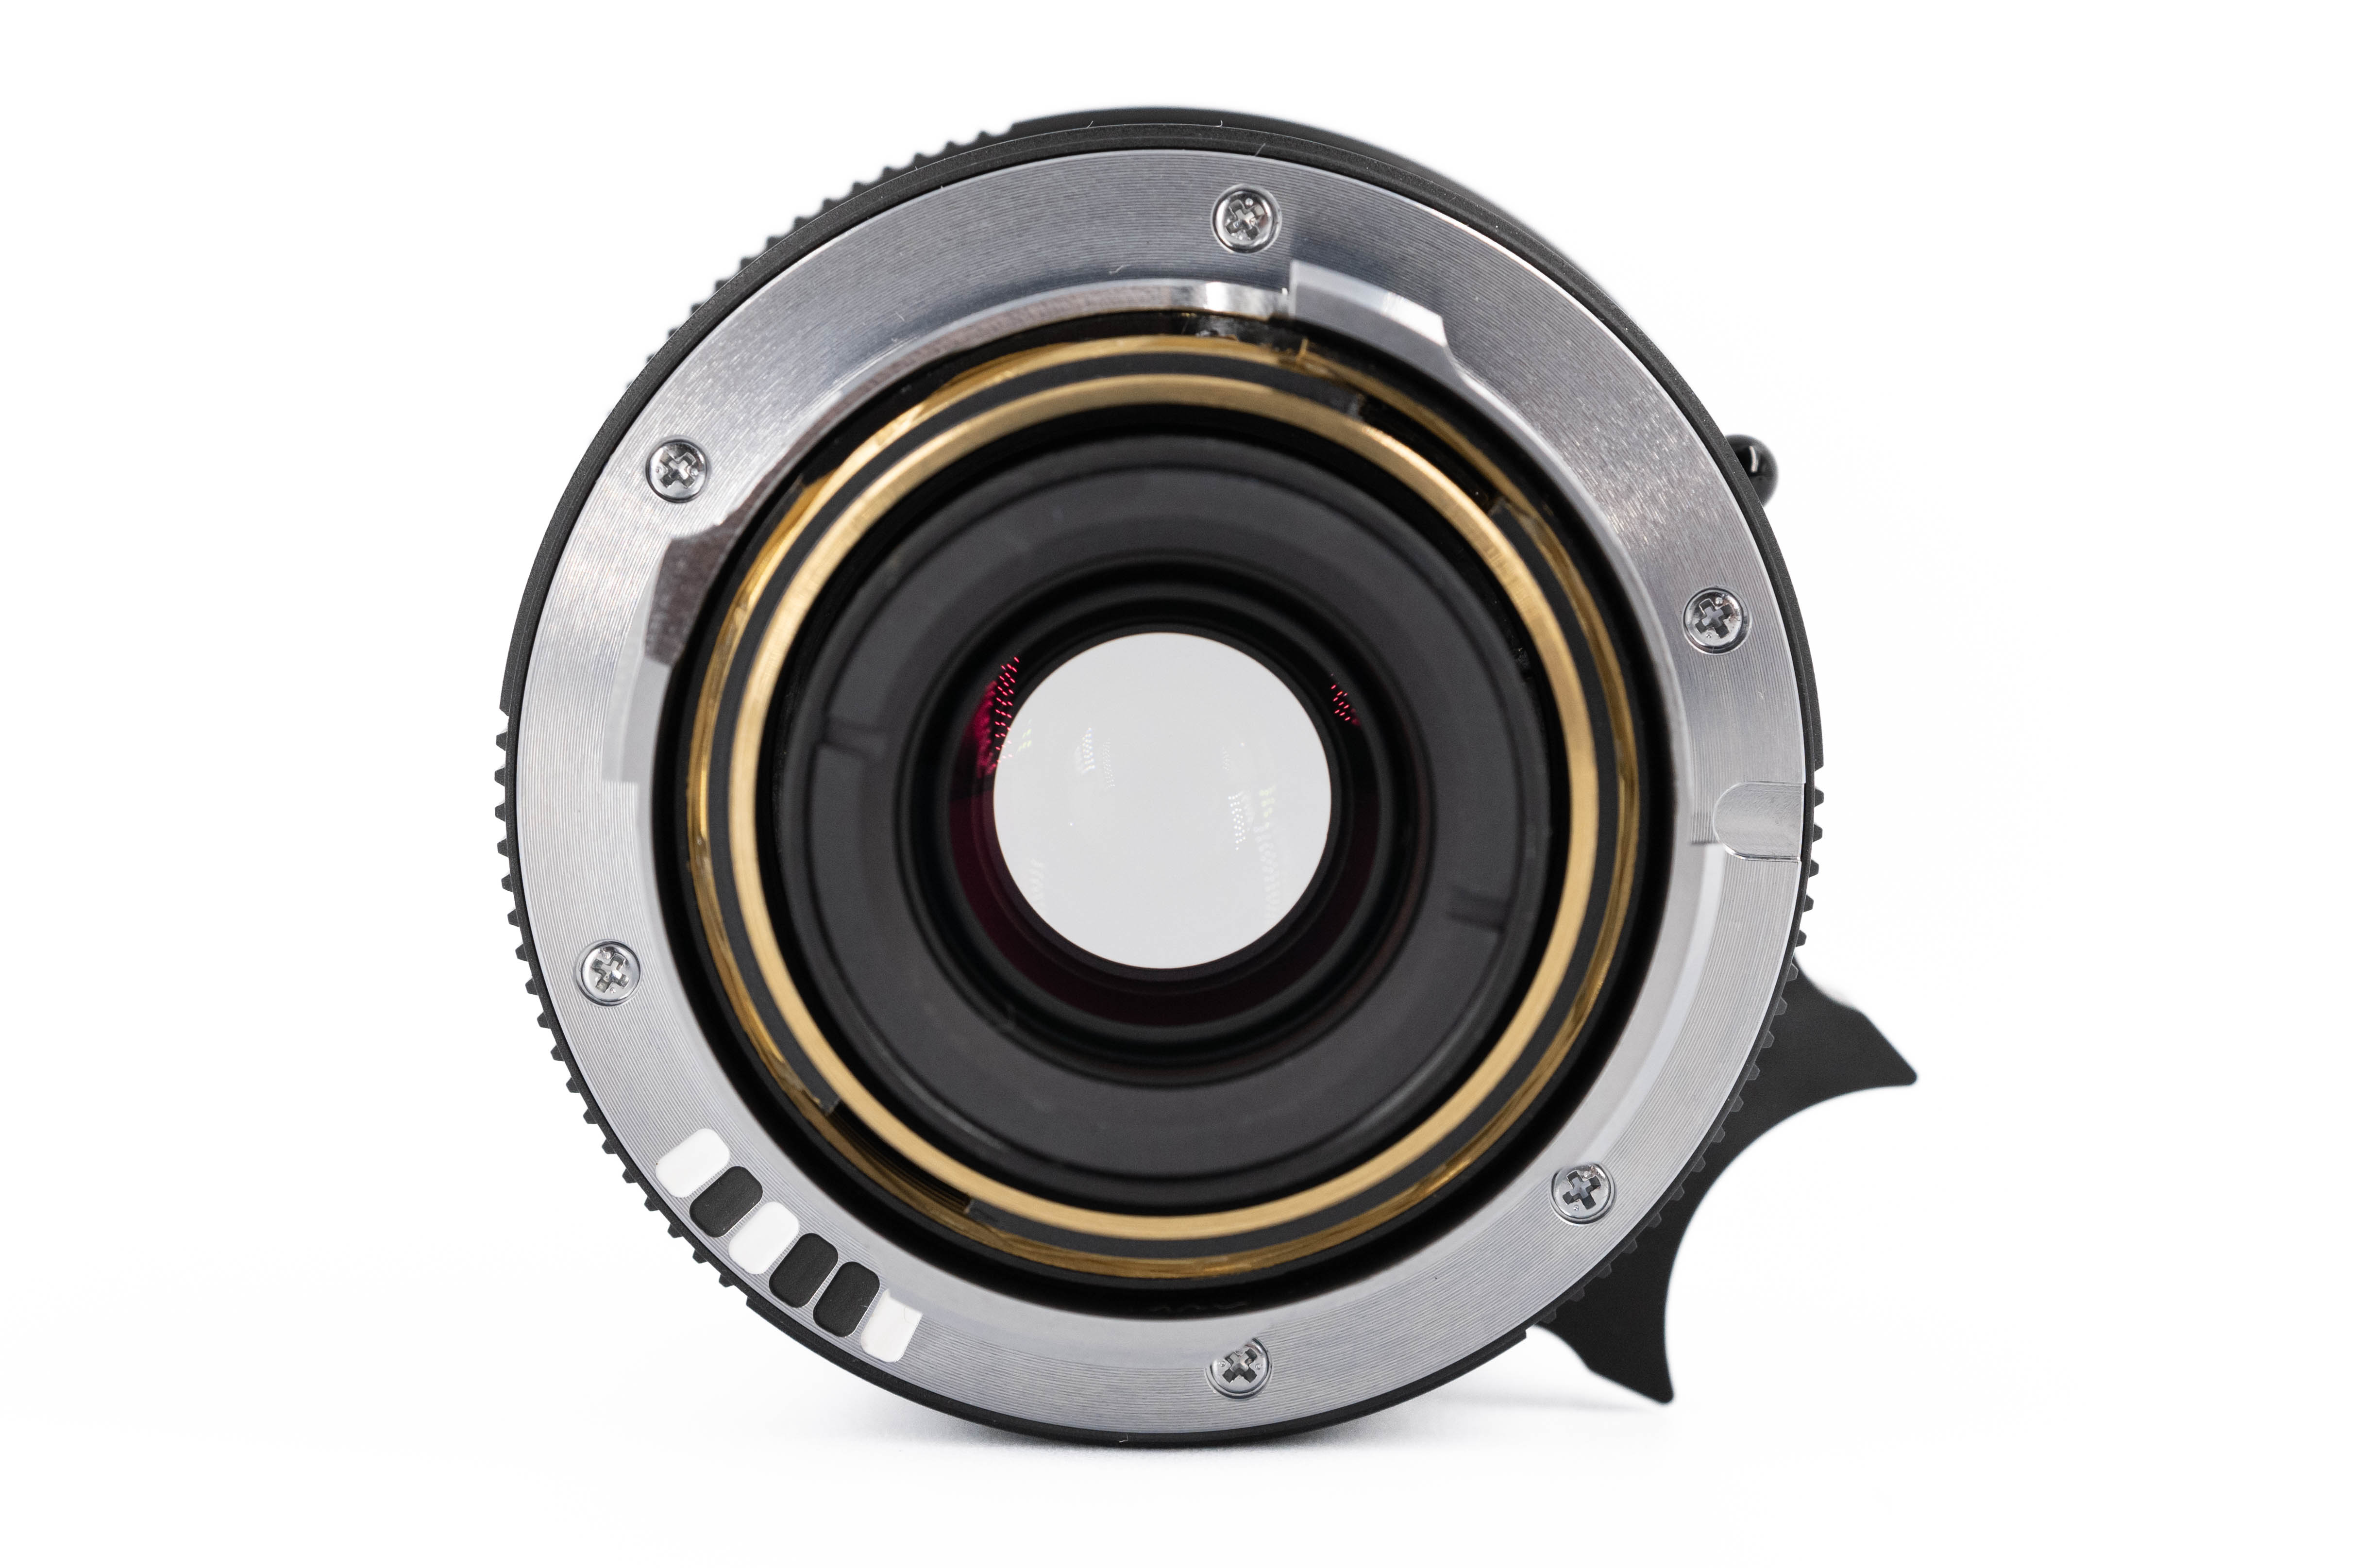 Leica Summicron-M 28mm f/2 ASPH Matt Black